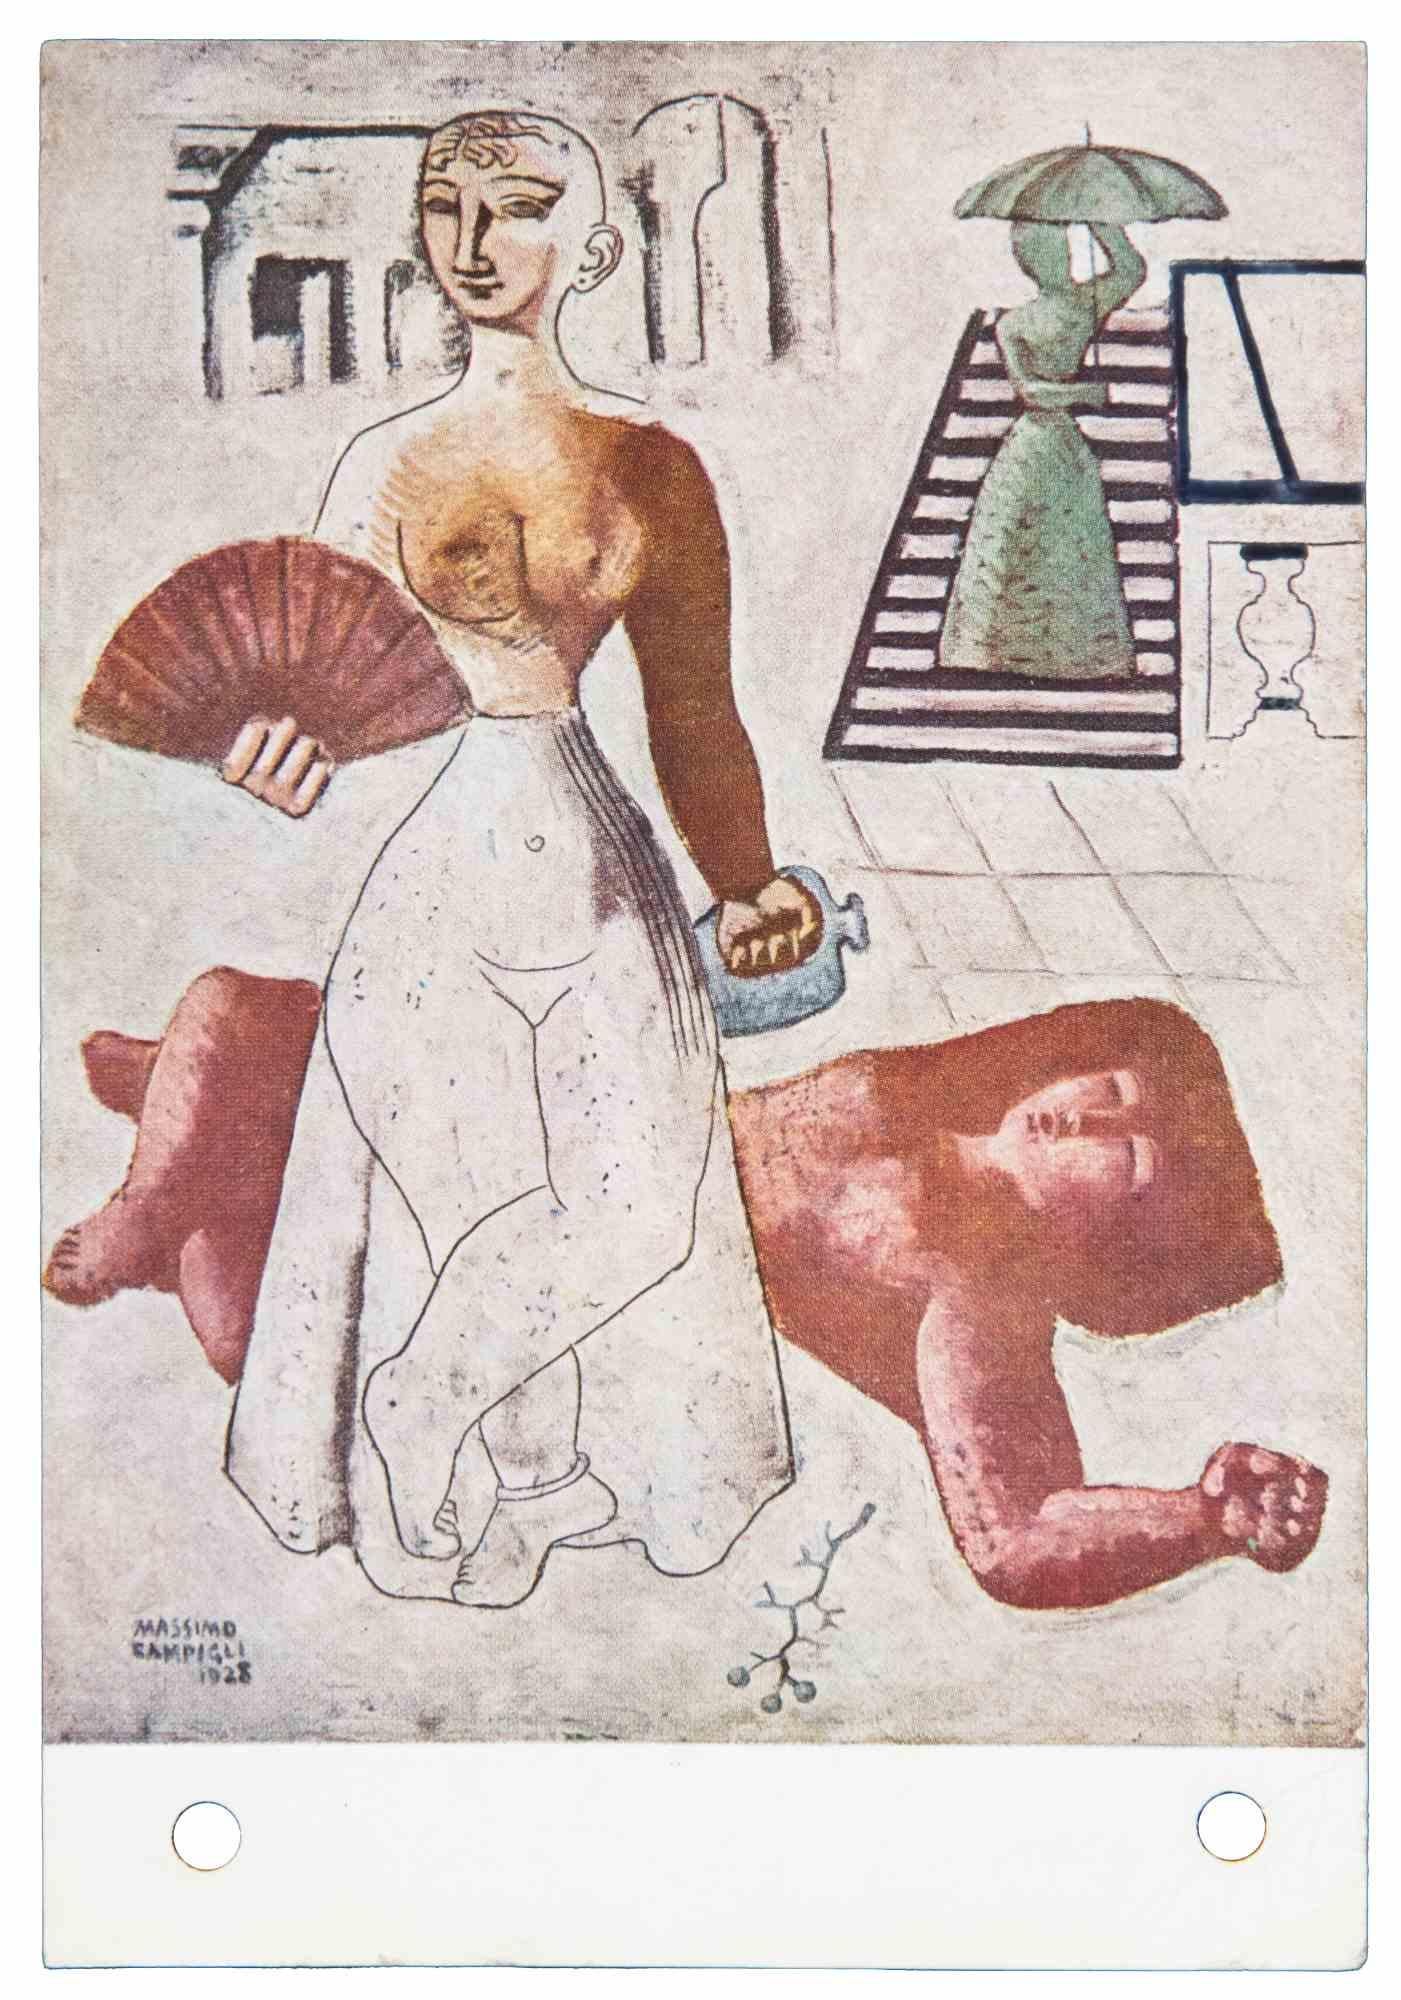 Postkarte ist eine Vintage-Postkarte, Offset realisiert nach Massimo Campigli im Jahr 1895, aber im Jahr 1952 gesendet.

Die Postkarte ist an Nesto Jacometti von Paris nach Genf adressiert. Handsigniert von Massimo Campigli.

Guter Zustand, Stempel